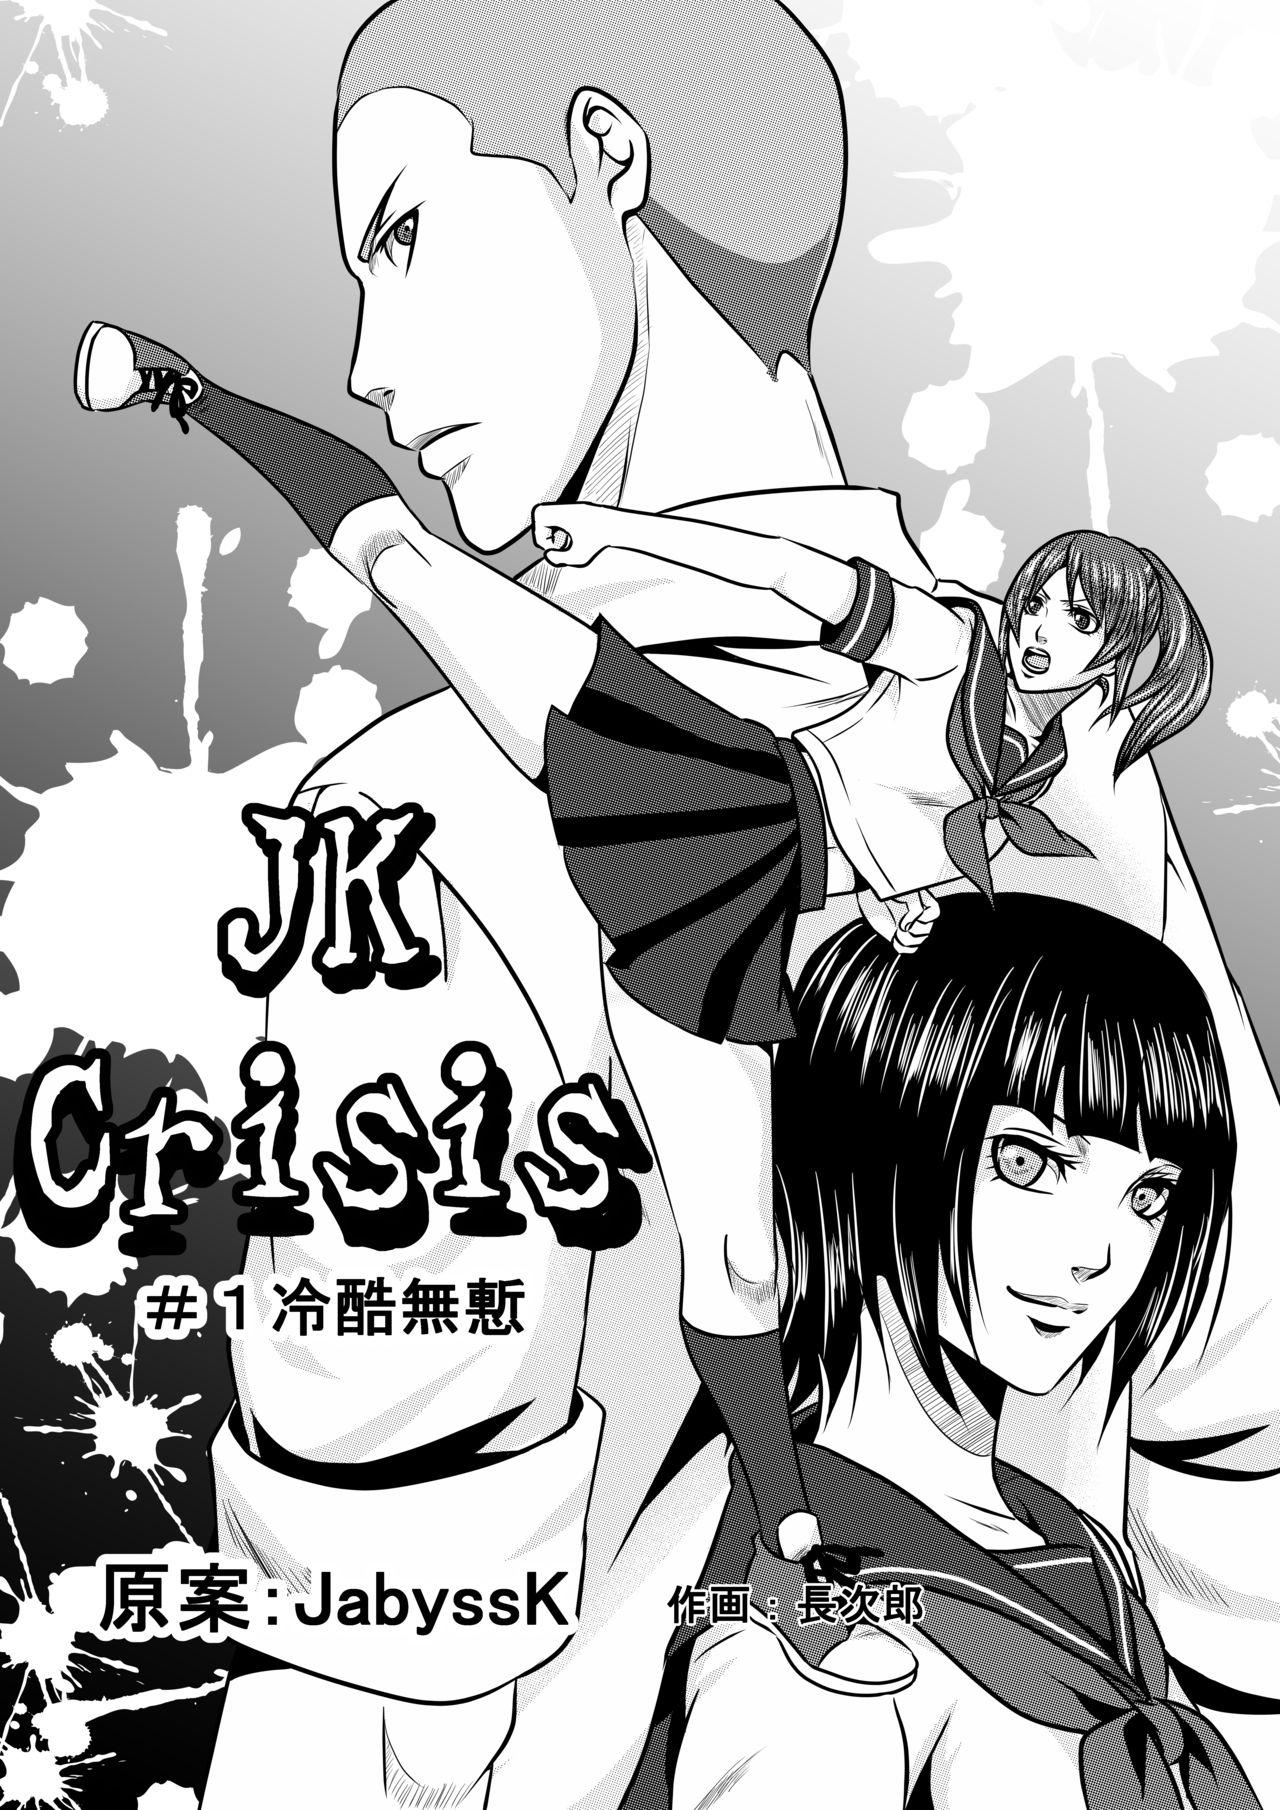 JK Crisis #1_ Cold and Cruel + JK Crisis #2_ Athna + JK Crisis 3 1